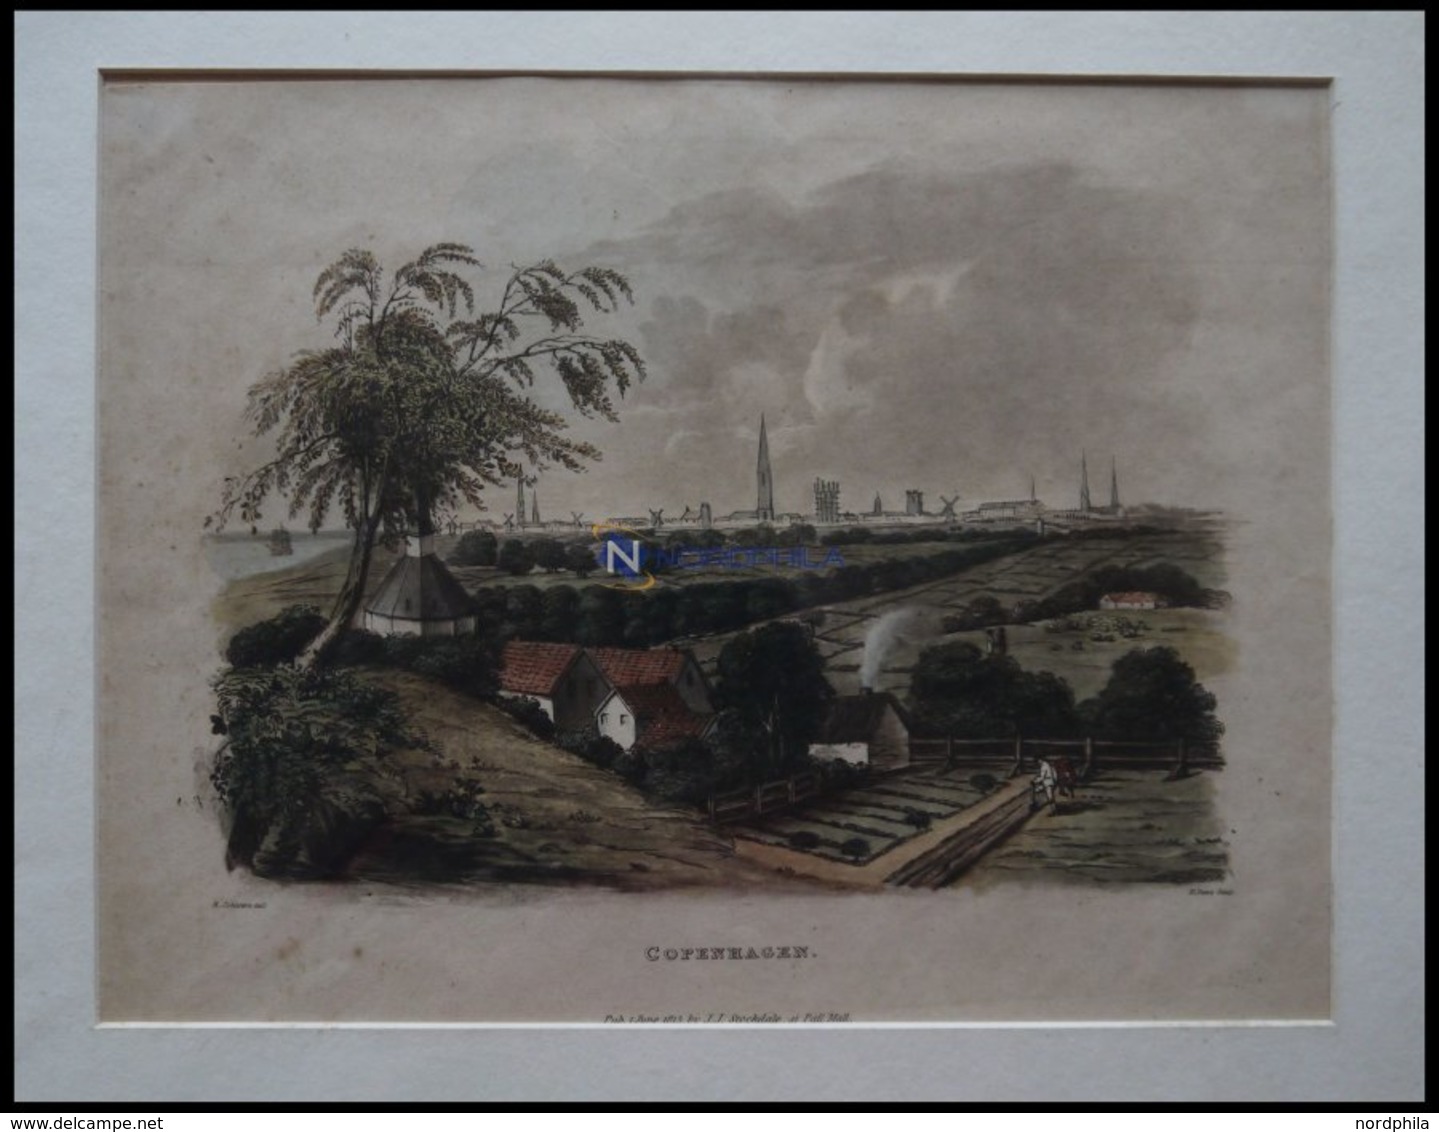 KOPENHAGEN, Gesamtansicht, Altkolorierte Aquatinta Von Johnston/Dawe 1815 - Litografía